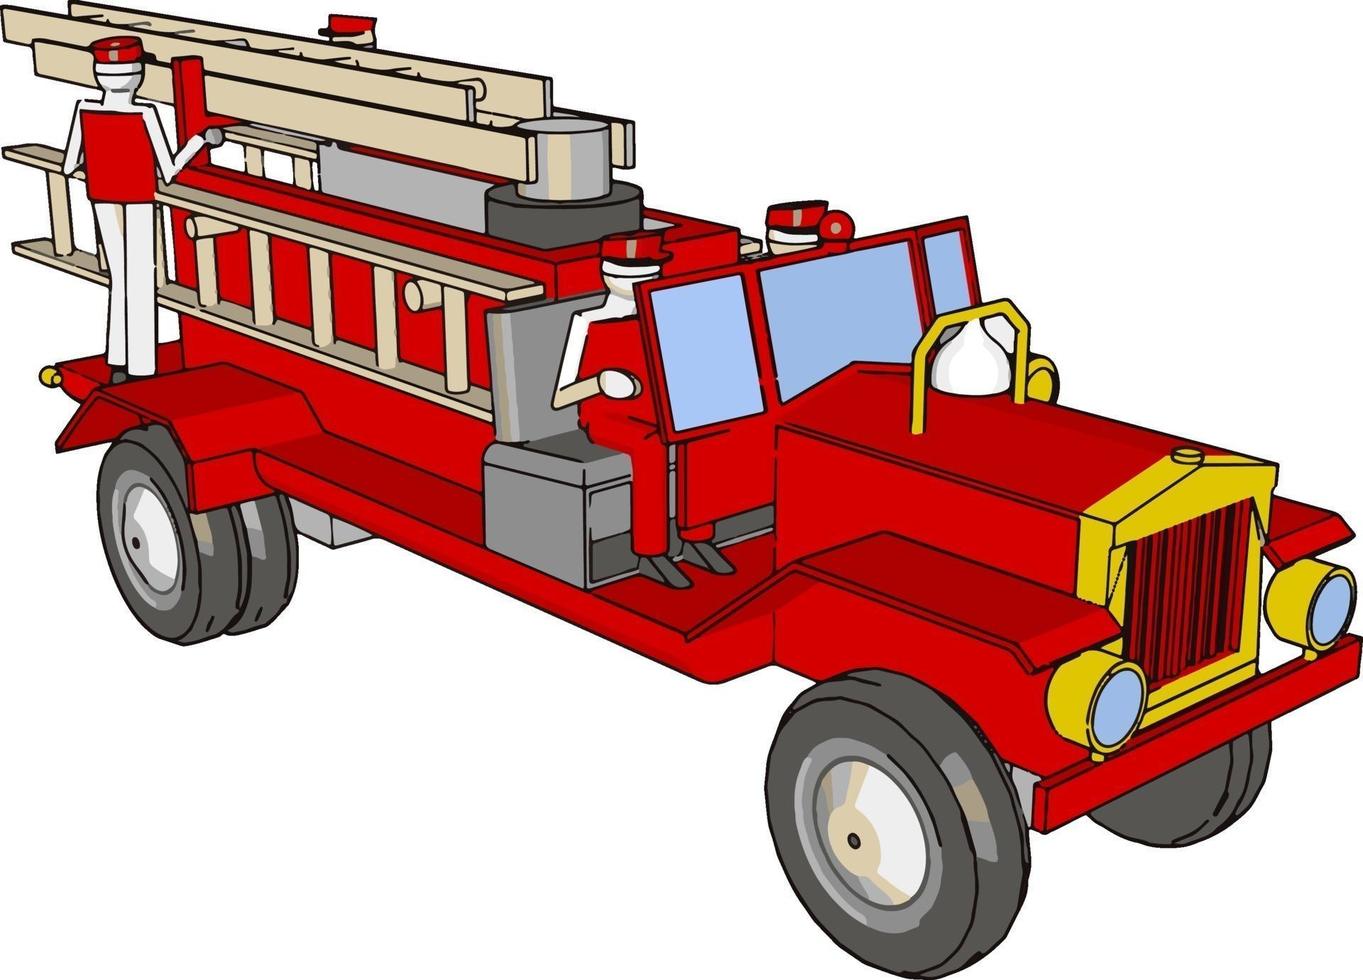 caminhões de bombeiros vermelhos, ilustração, vetor em fundo branco.